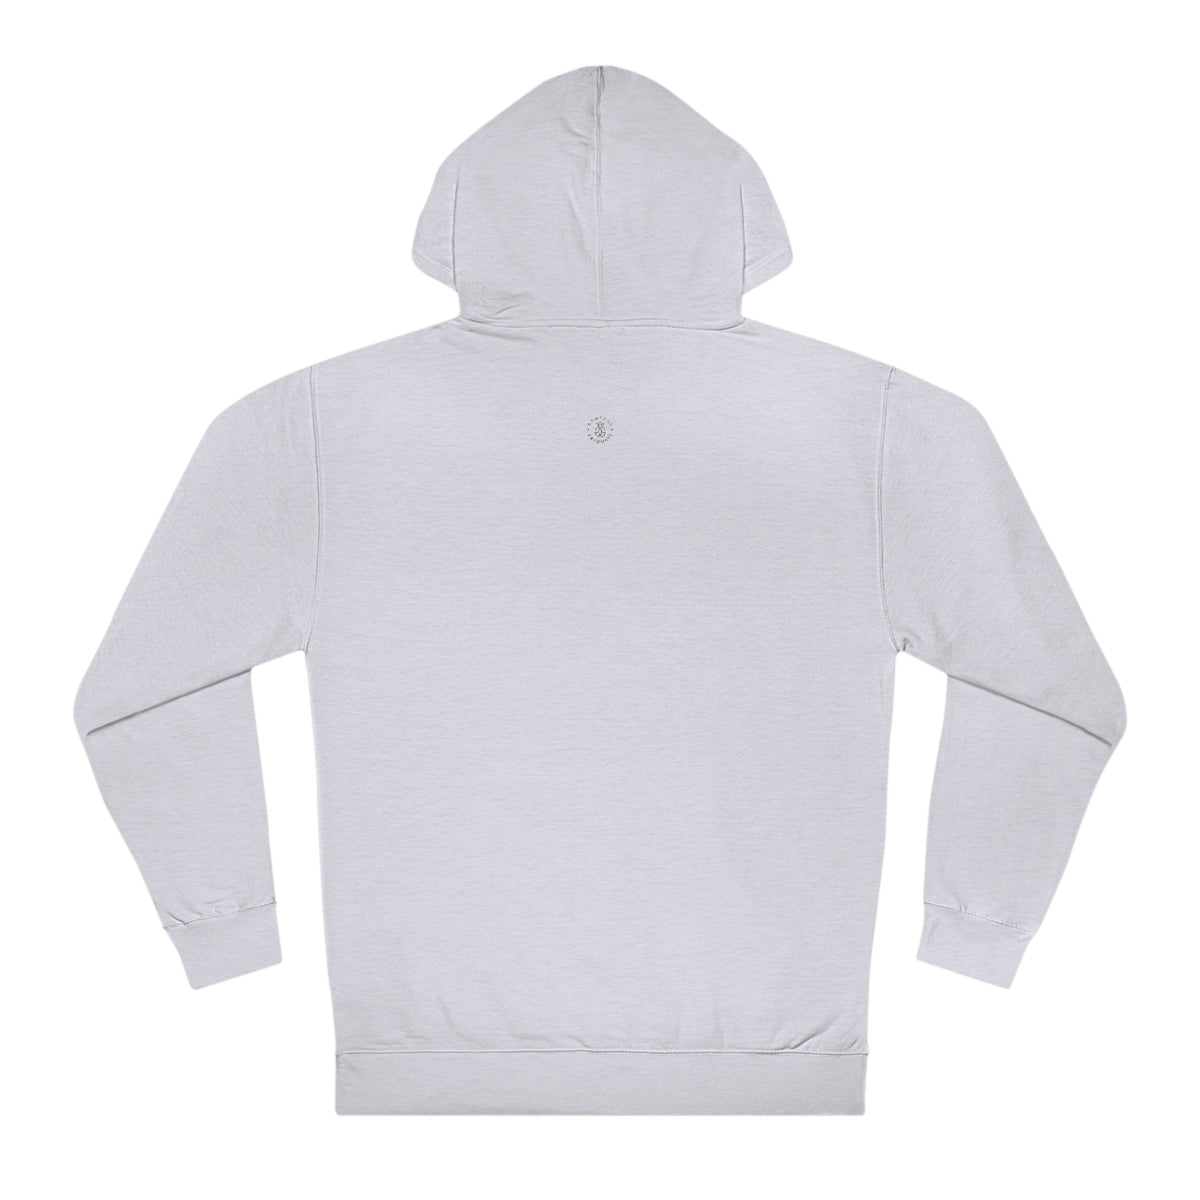 Clemson Hooded Sweatshirt - GG - ITC